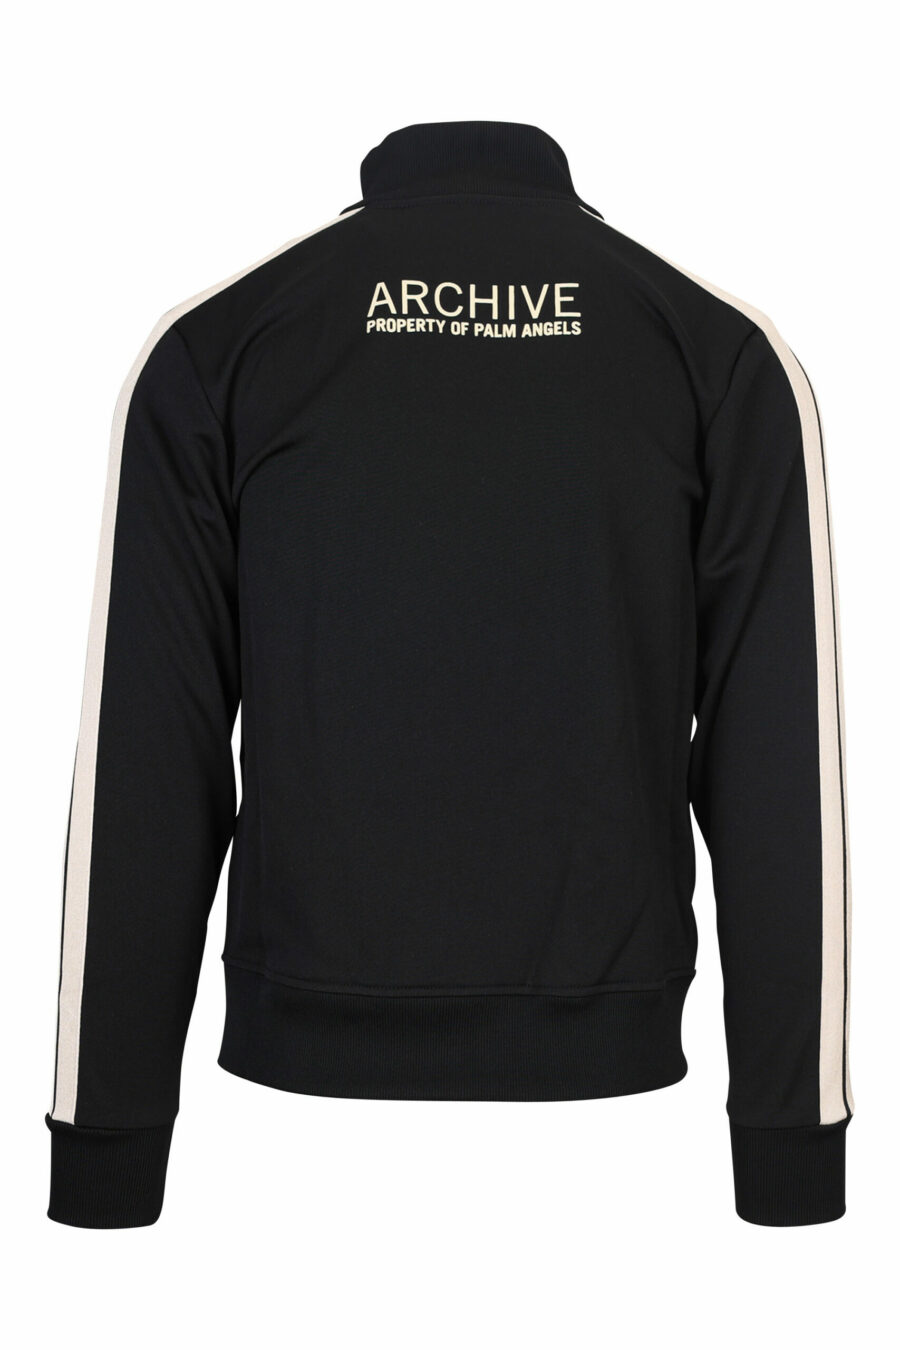 Sweatshirt noir avec fermeture éclair et rayures latérales blanches - 8057151109108 2 échelle